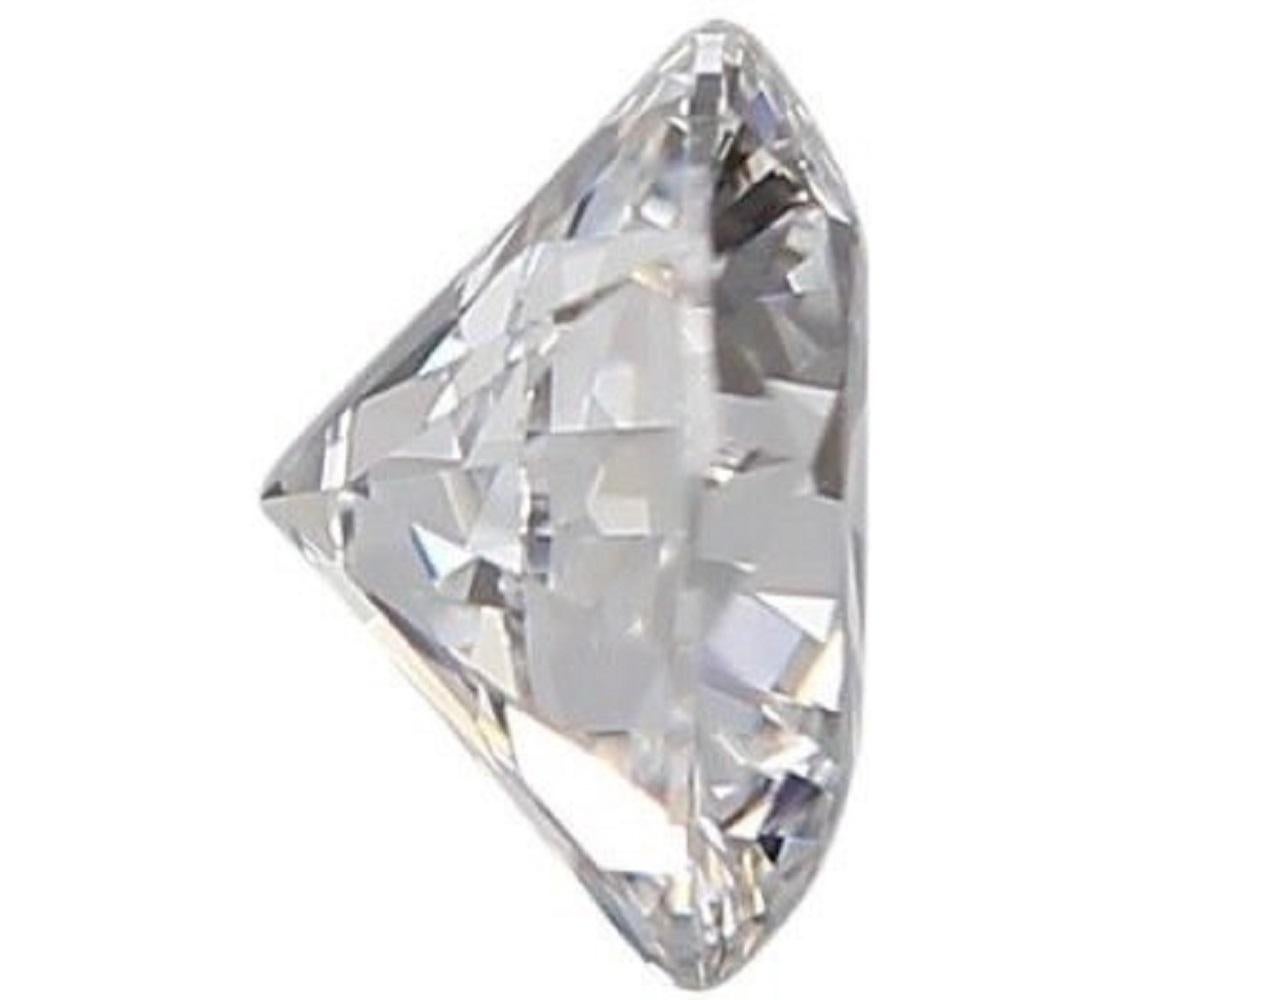 1 Étincelant diamant naturel rond de taille brillant de 0,9 carat I VVS1 de très bonne taille. Ce diamant est accompagné d'un certificat GIA et d'un numéro d'inscription au laser.

SKU : C-DSPV-167351-3
GIA 6451226991